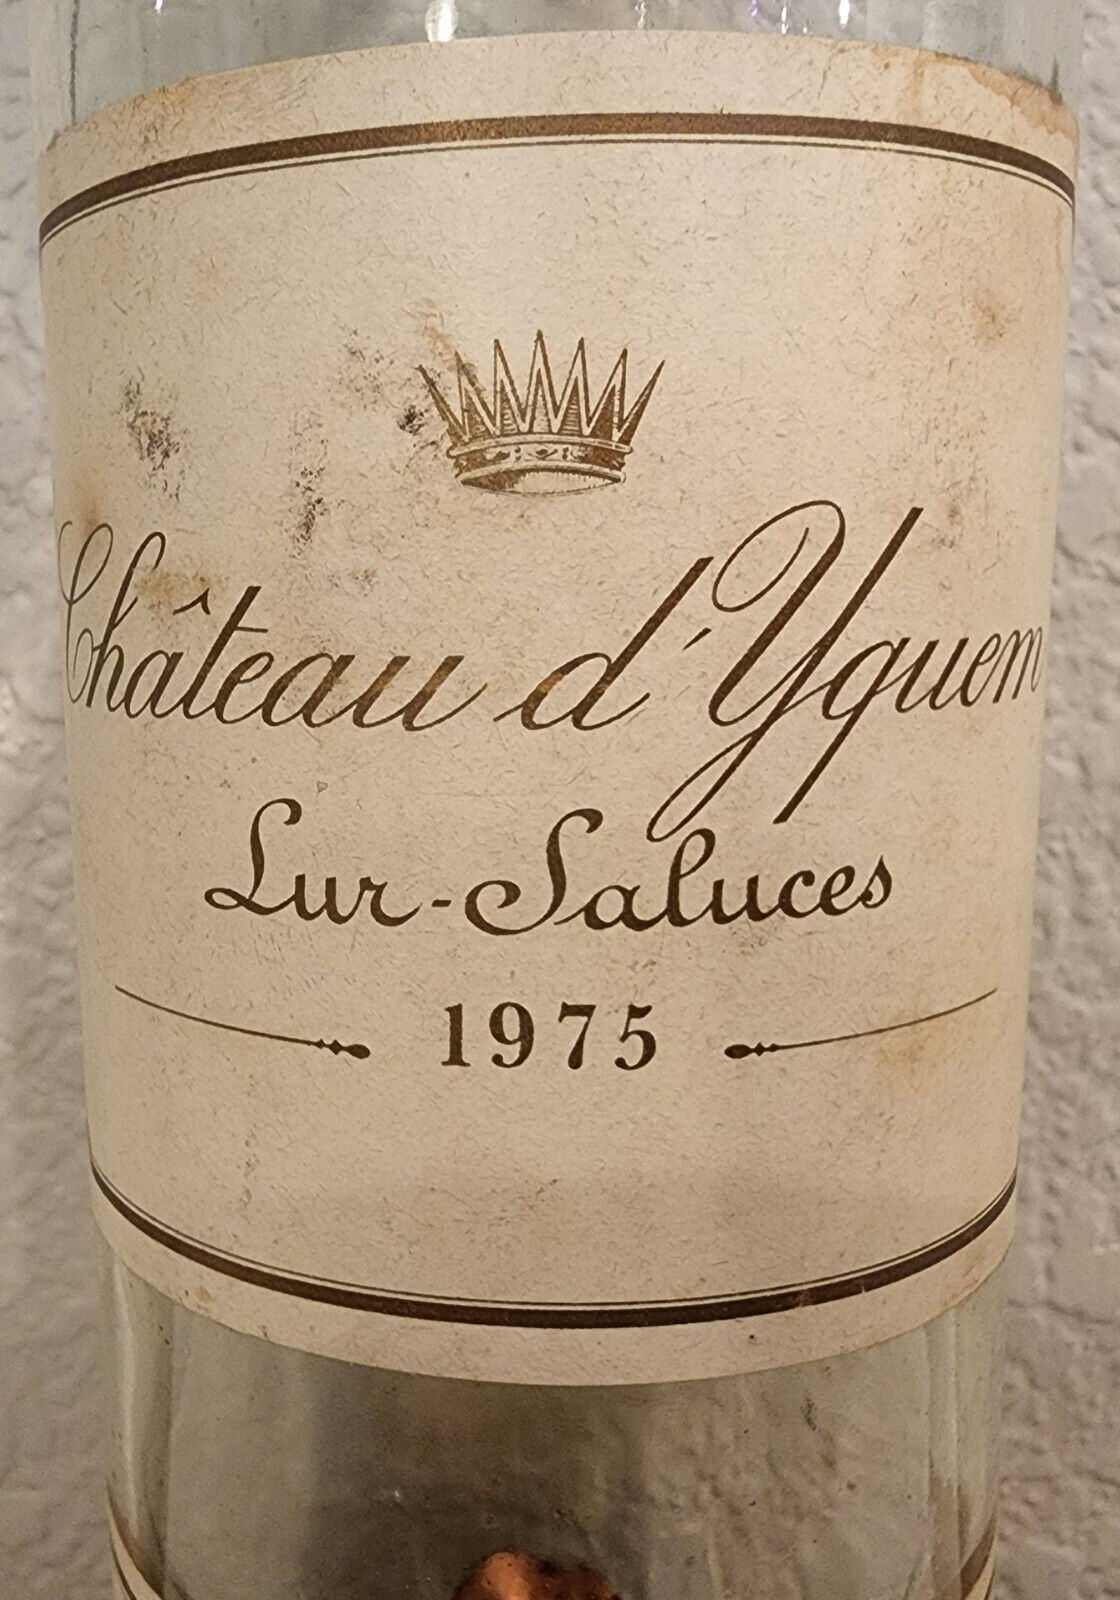 1975 Chateau d\'YQUEM, bouteille vide (ou etiquette)/empty bottle (or label)